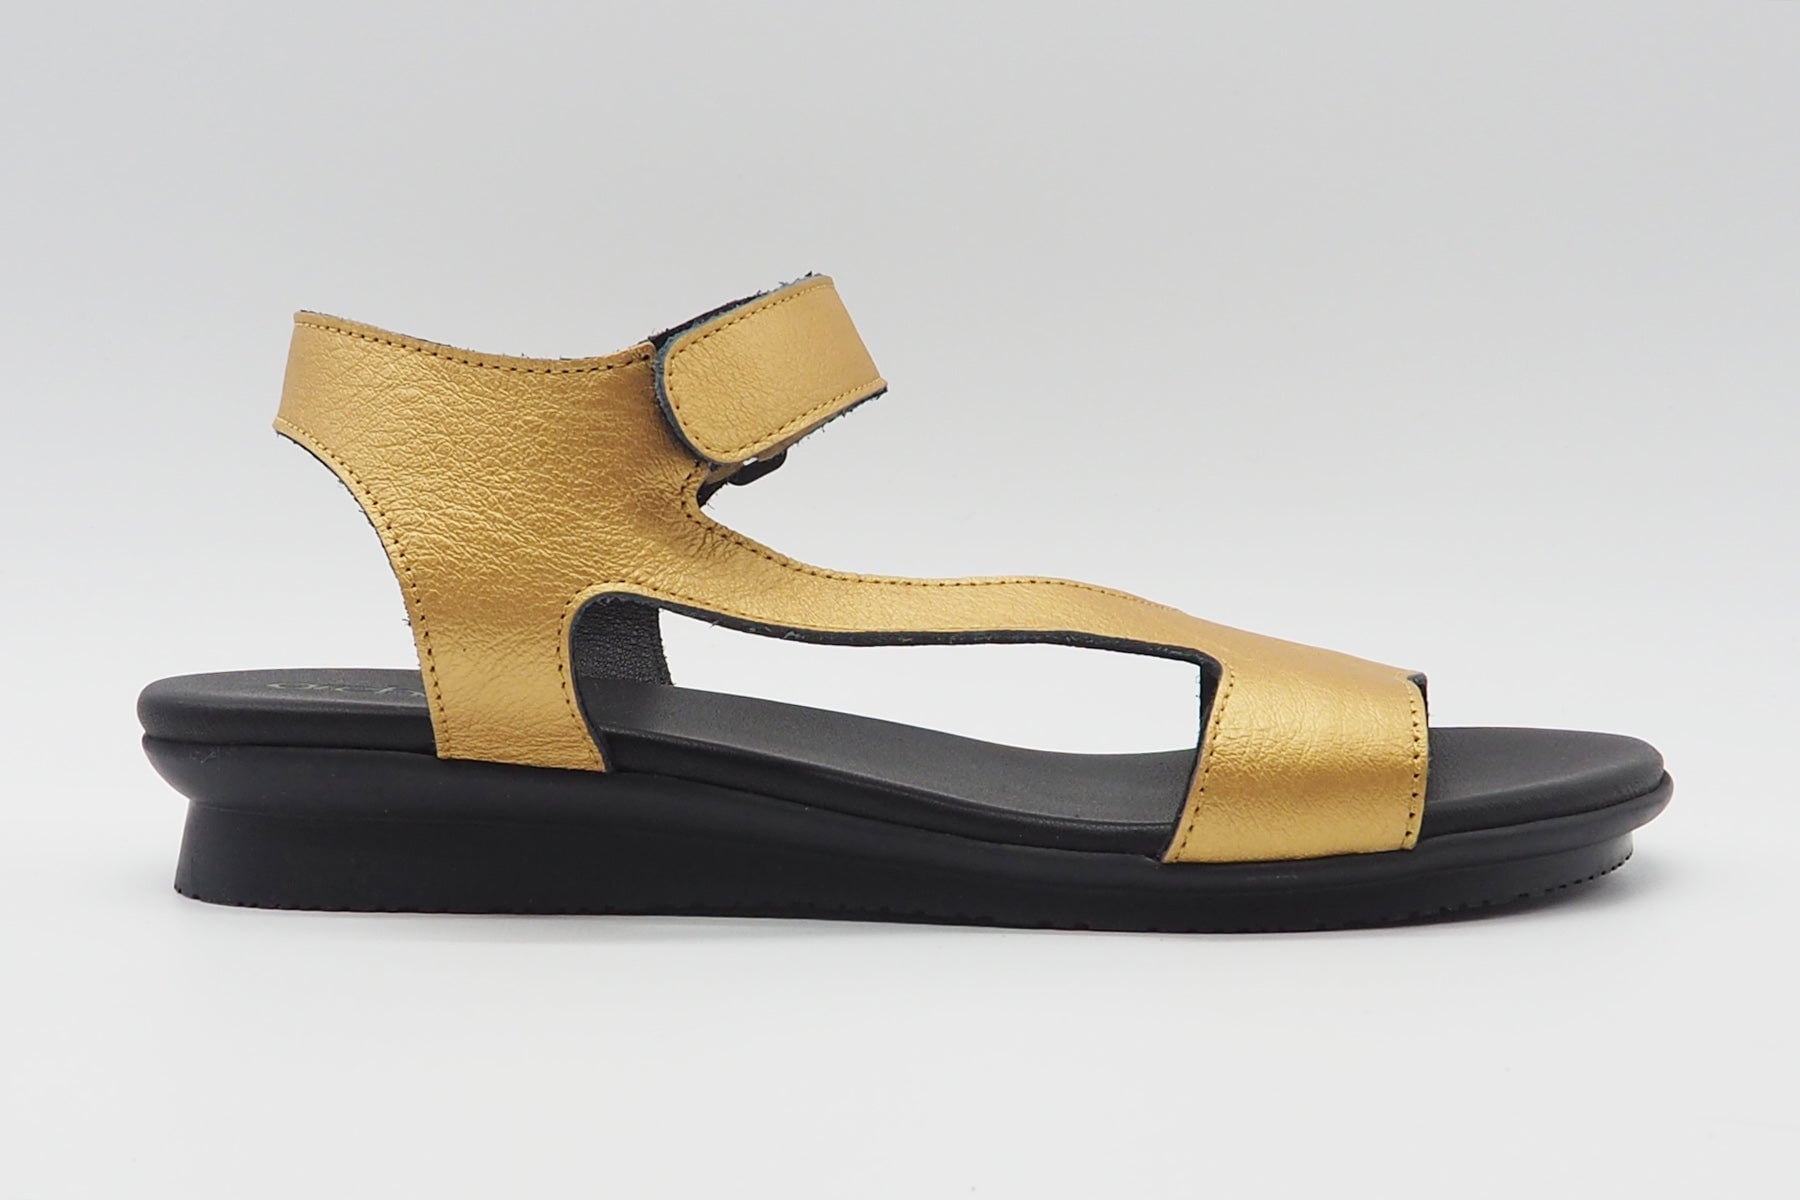 Damen Sandale aus Metallicleder in Gold - Auhako - Absatz 3cm Damen Sandalen Arche 